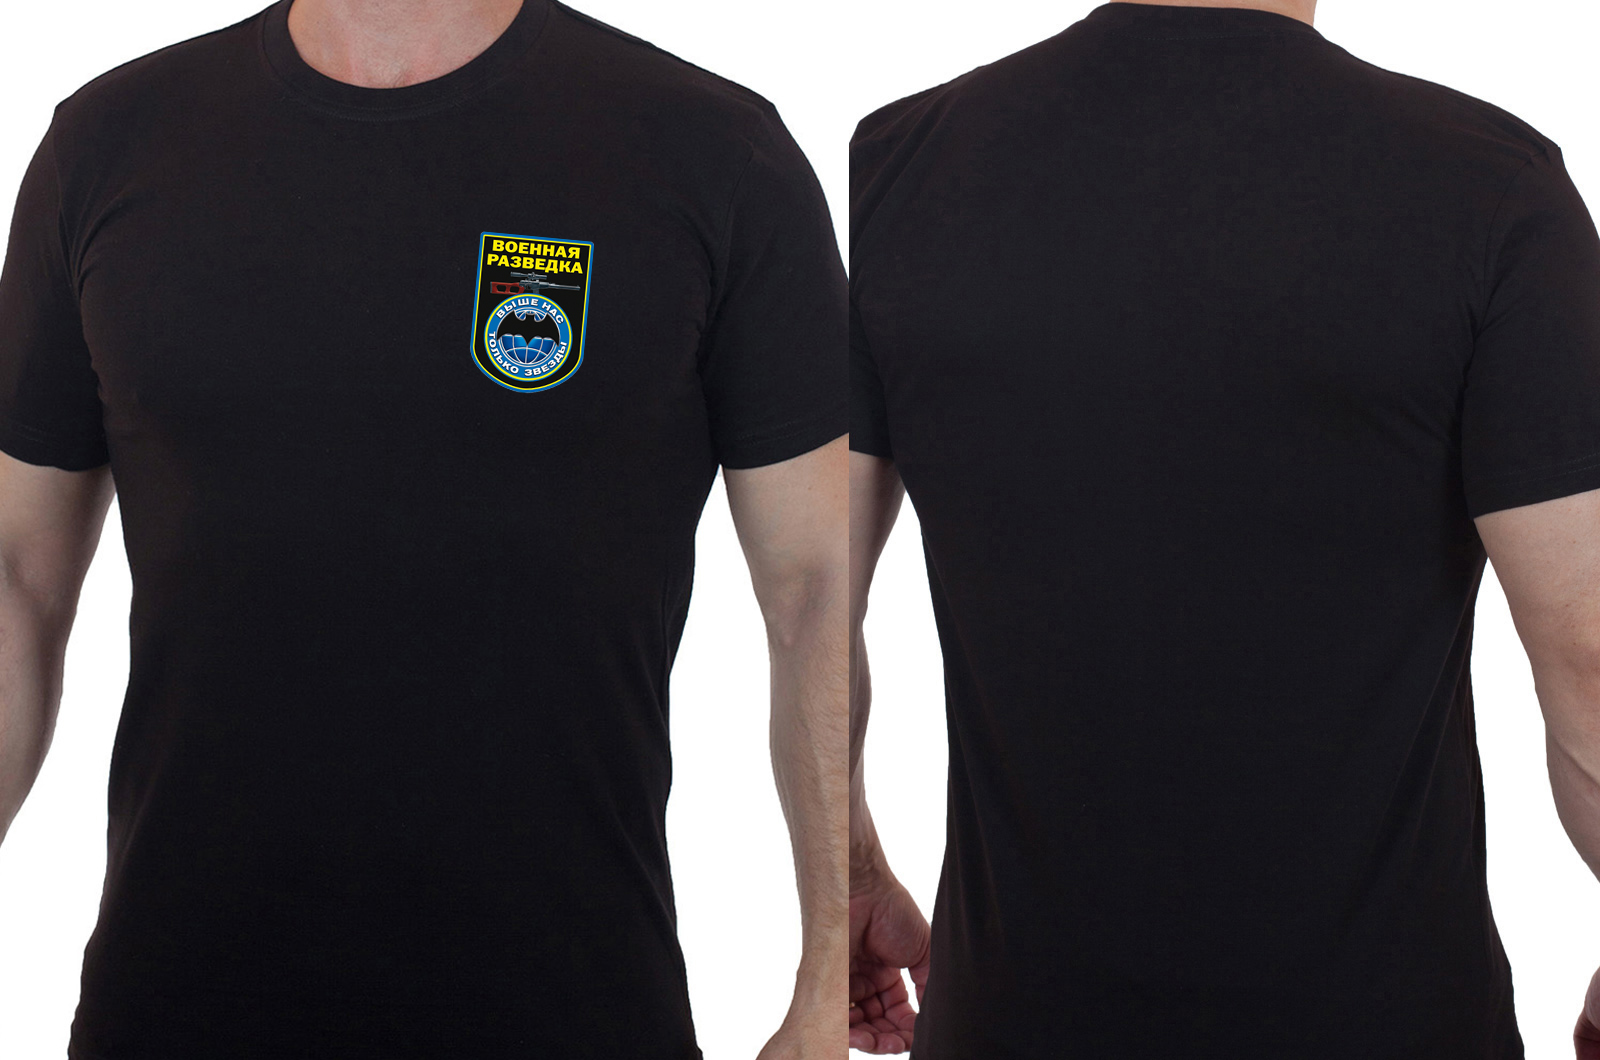 Чёрная футболка военной разведки с девизом 